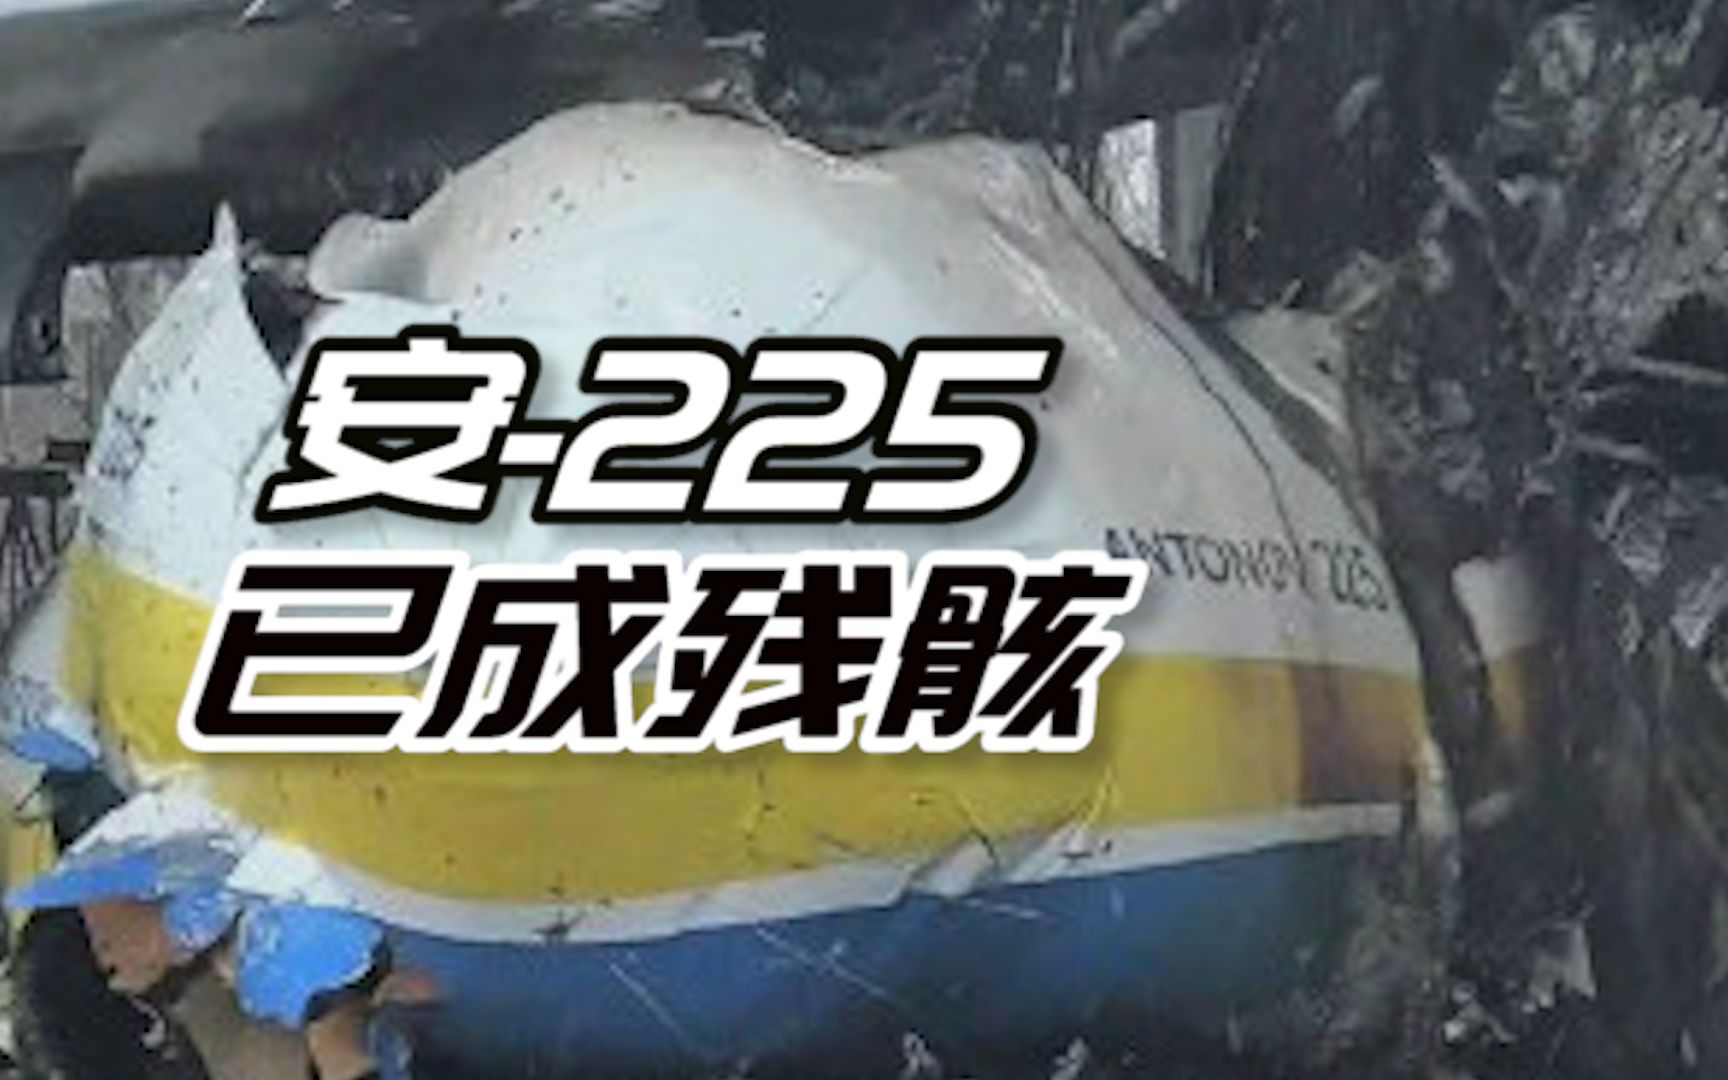 全球最大运输机确认被毁！俄媒公布安-225最新画面：损毁严重已成残骸